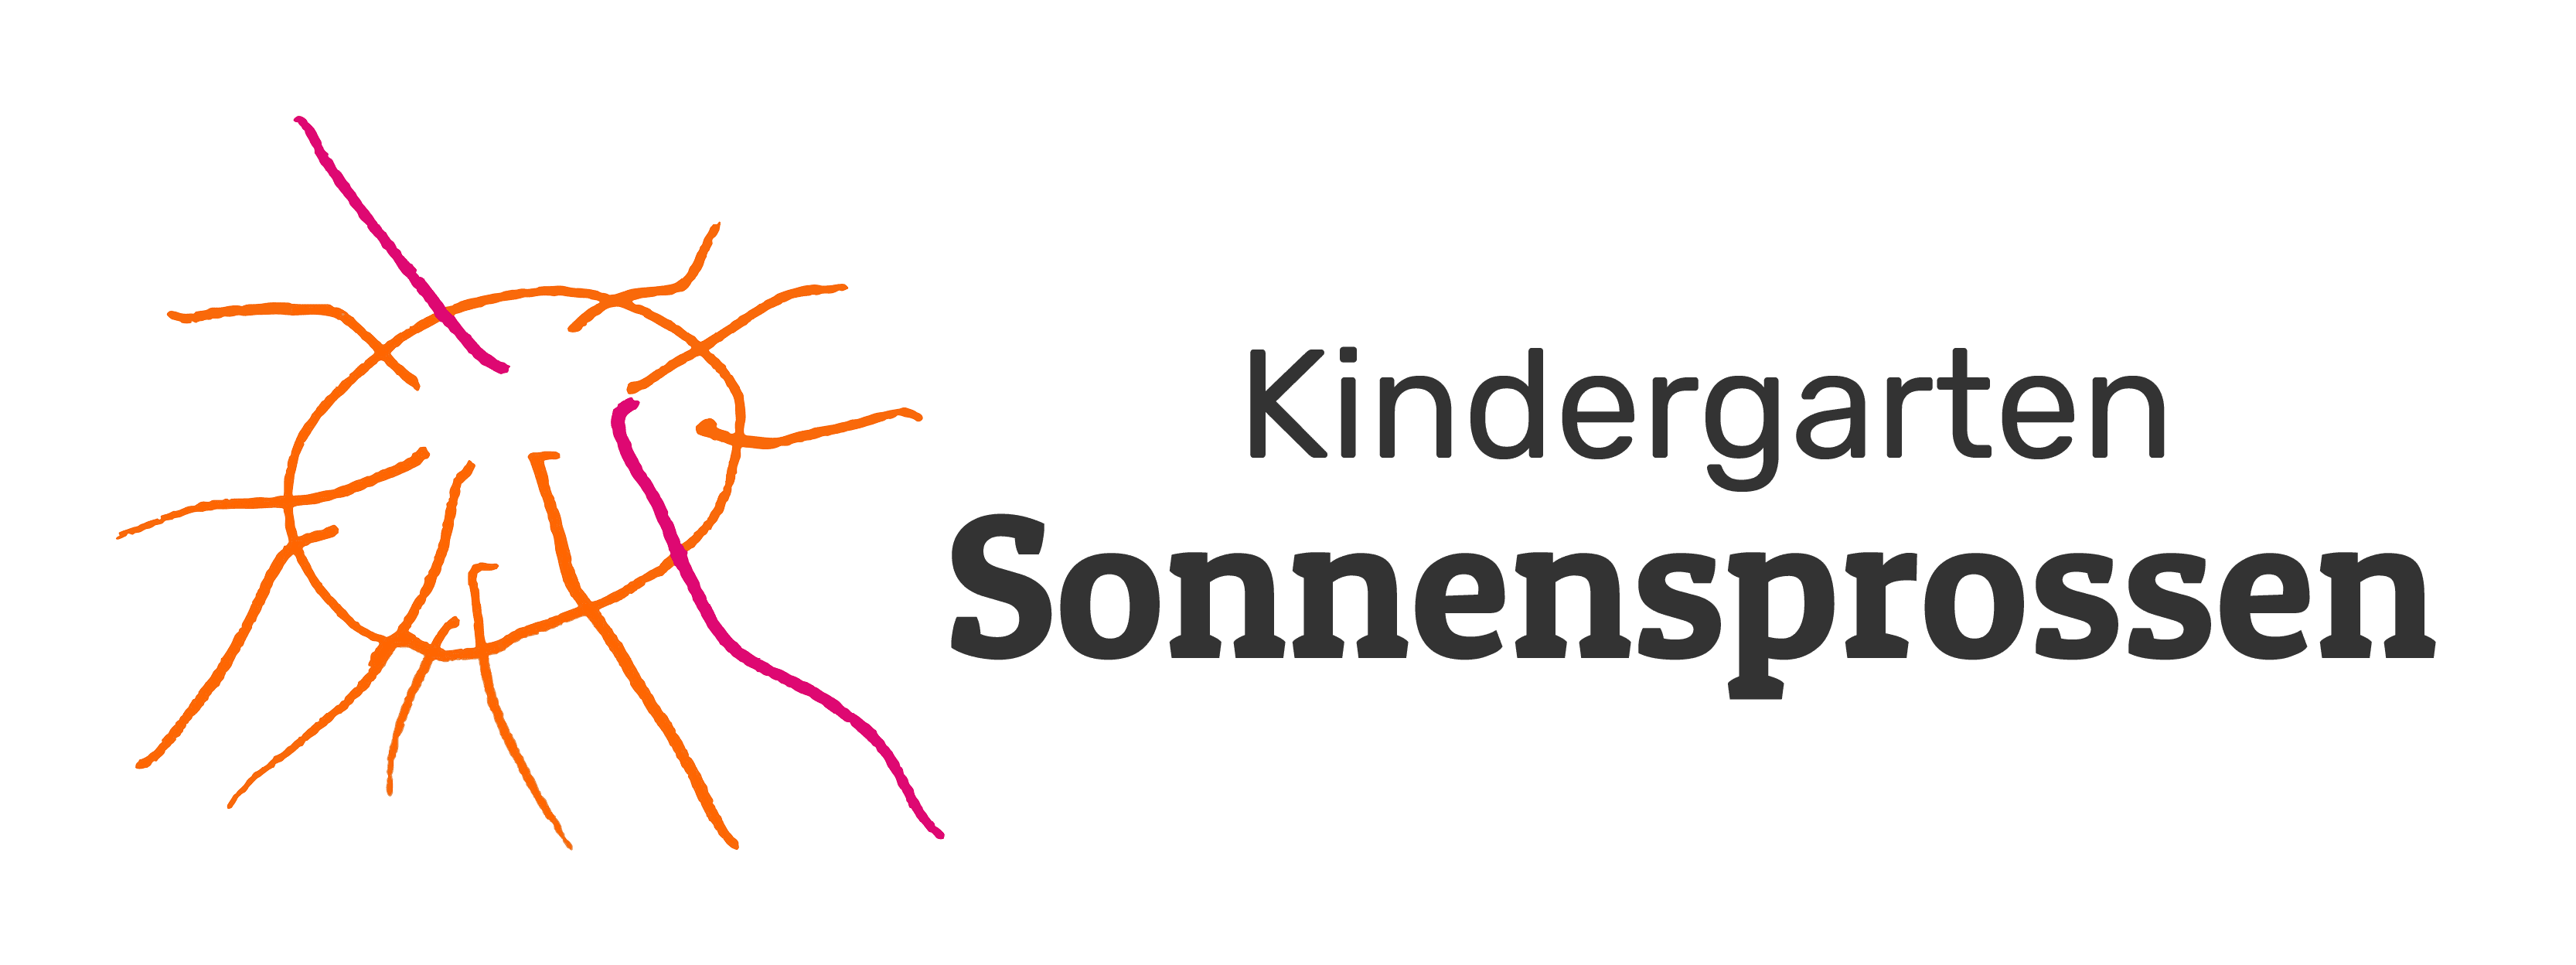 Kindergarten Sonnensprossen